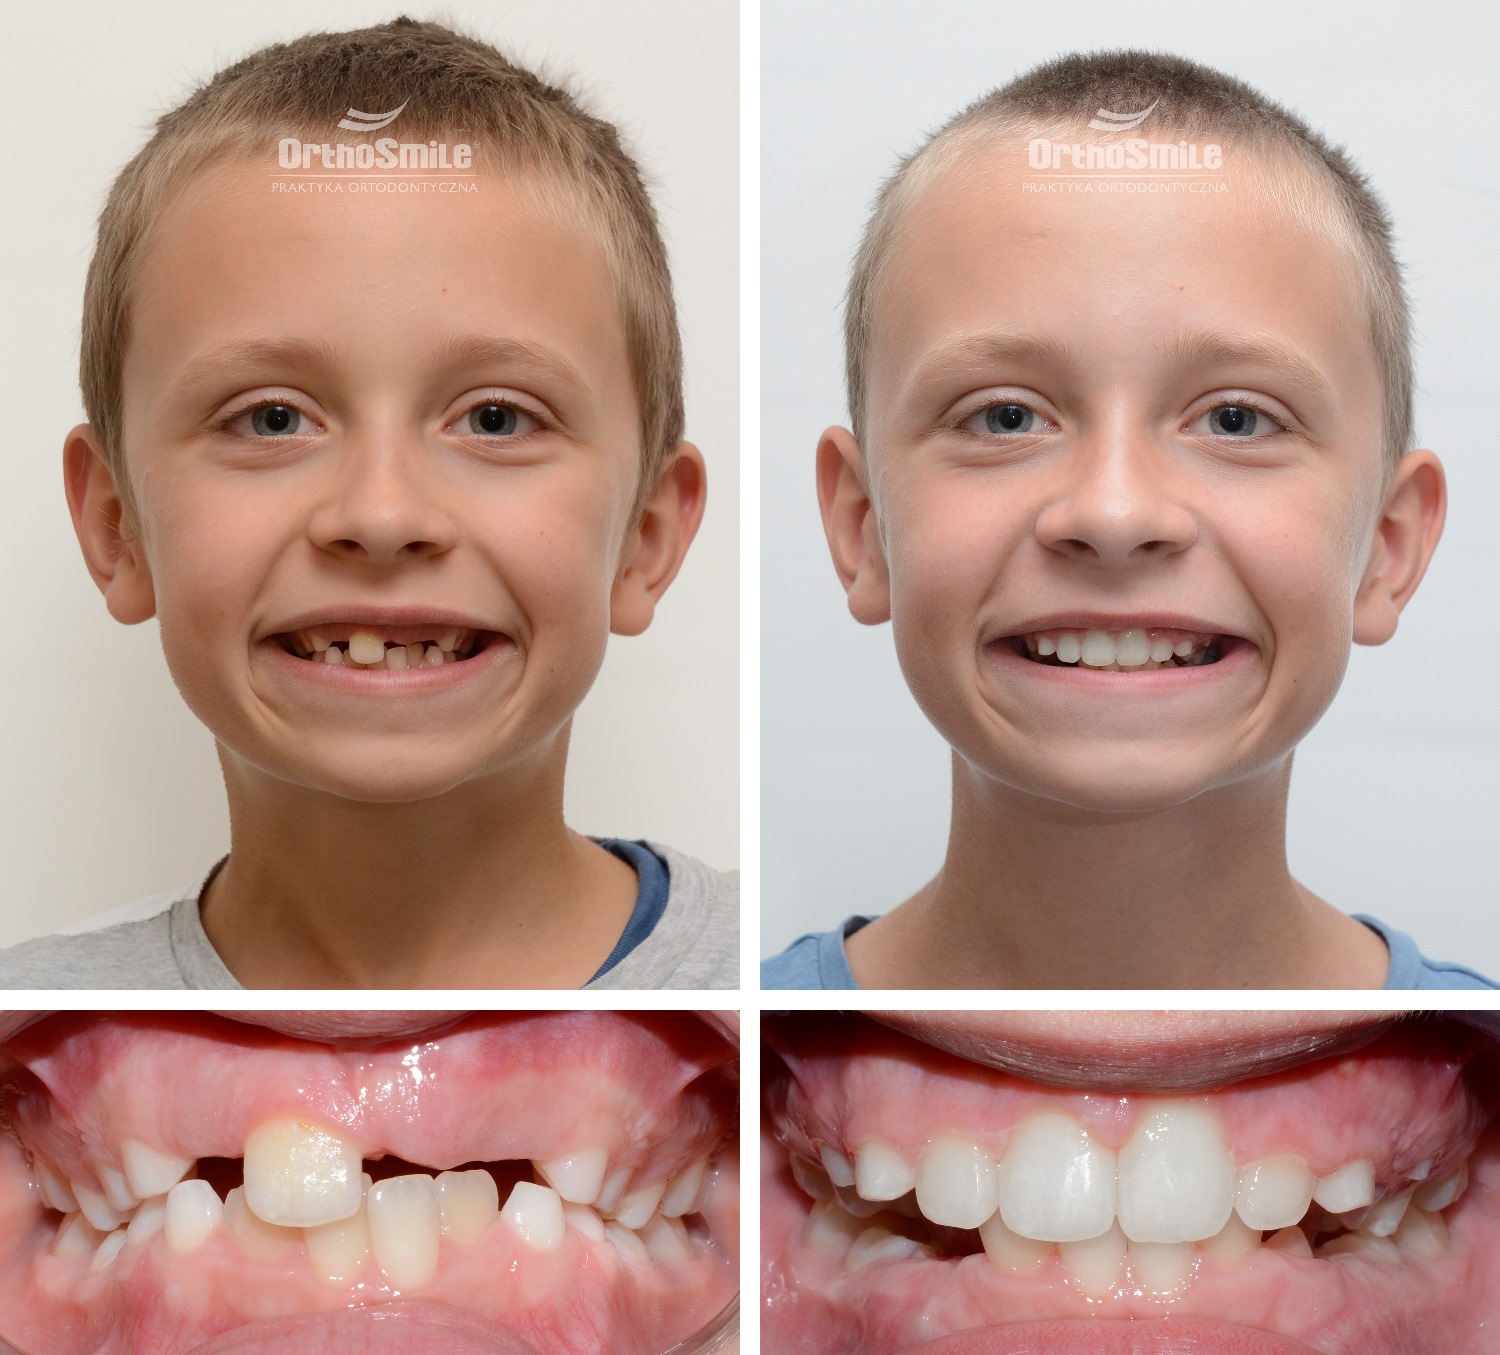 Powodem konsultacji oraz leczenia małego Pacjenta była obecność dodatkowego siekacza bocznego. W związku z tym przemieszczeniu uległ zawiązek siekacza przyśrodkowego. Przez to proces jego wyrzynania był uniemożliwiony (tzw. ząb zatrzymany).
Dodatkowy ząb. Leczenie ortodontyczne dzieci – metamorfozy. Praktyka Ortodontyczna Orthosmile, Wrocław